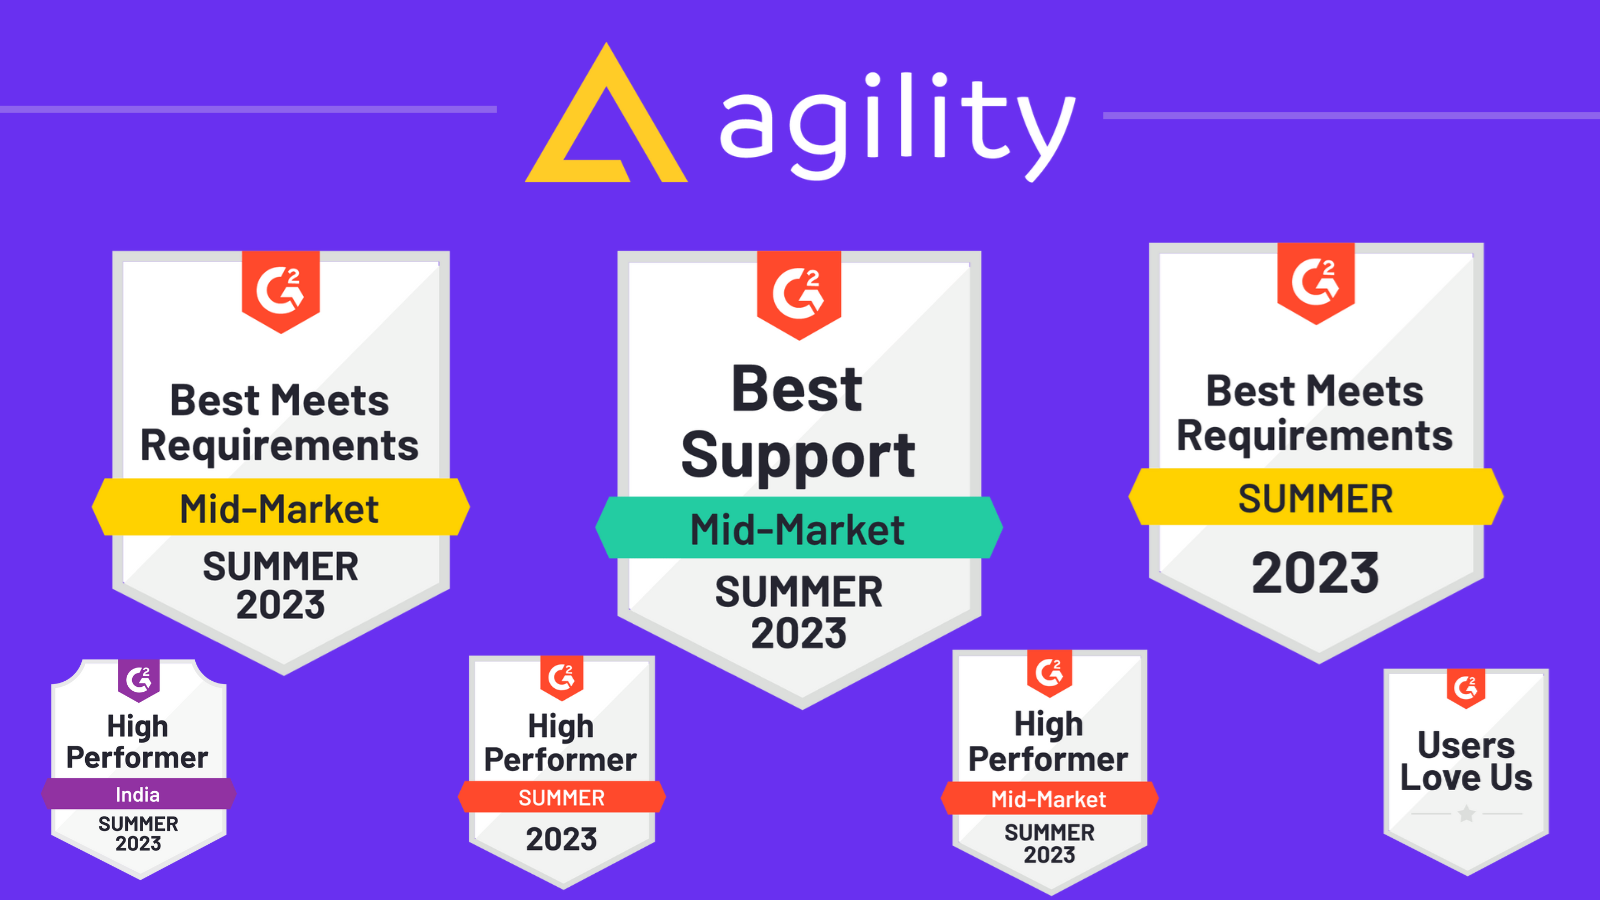 Agility's G2 Badges, Summer 2023